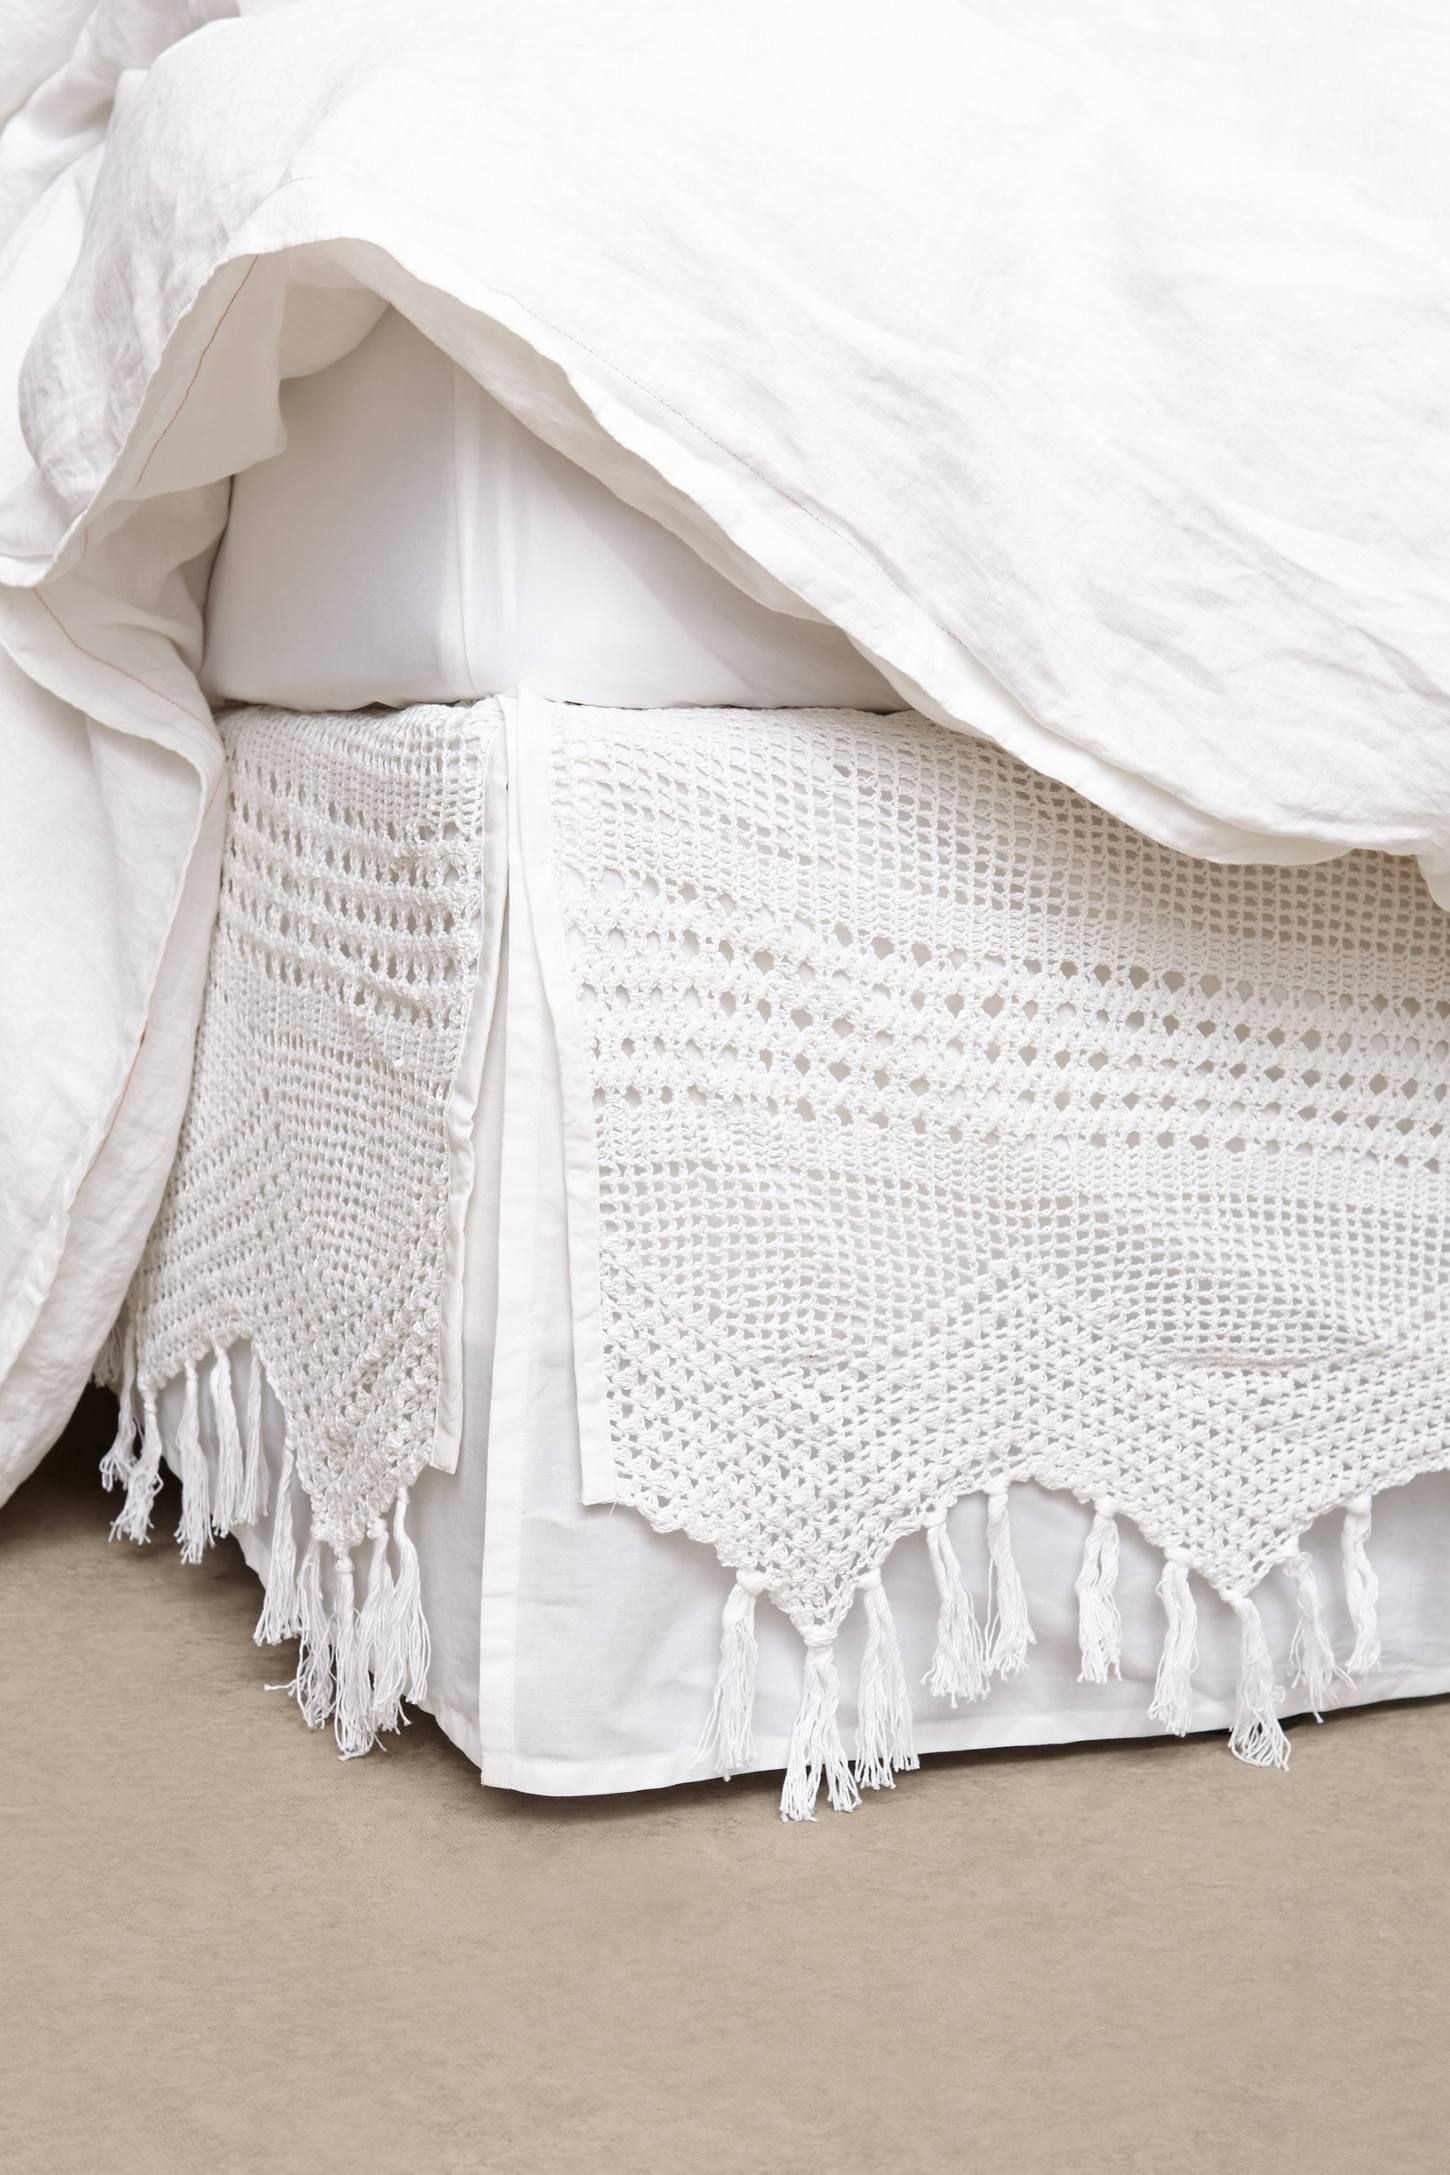 Crocheted bed skirt